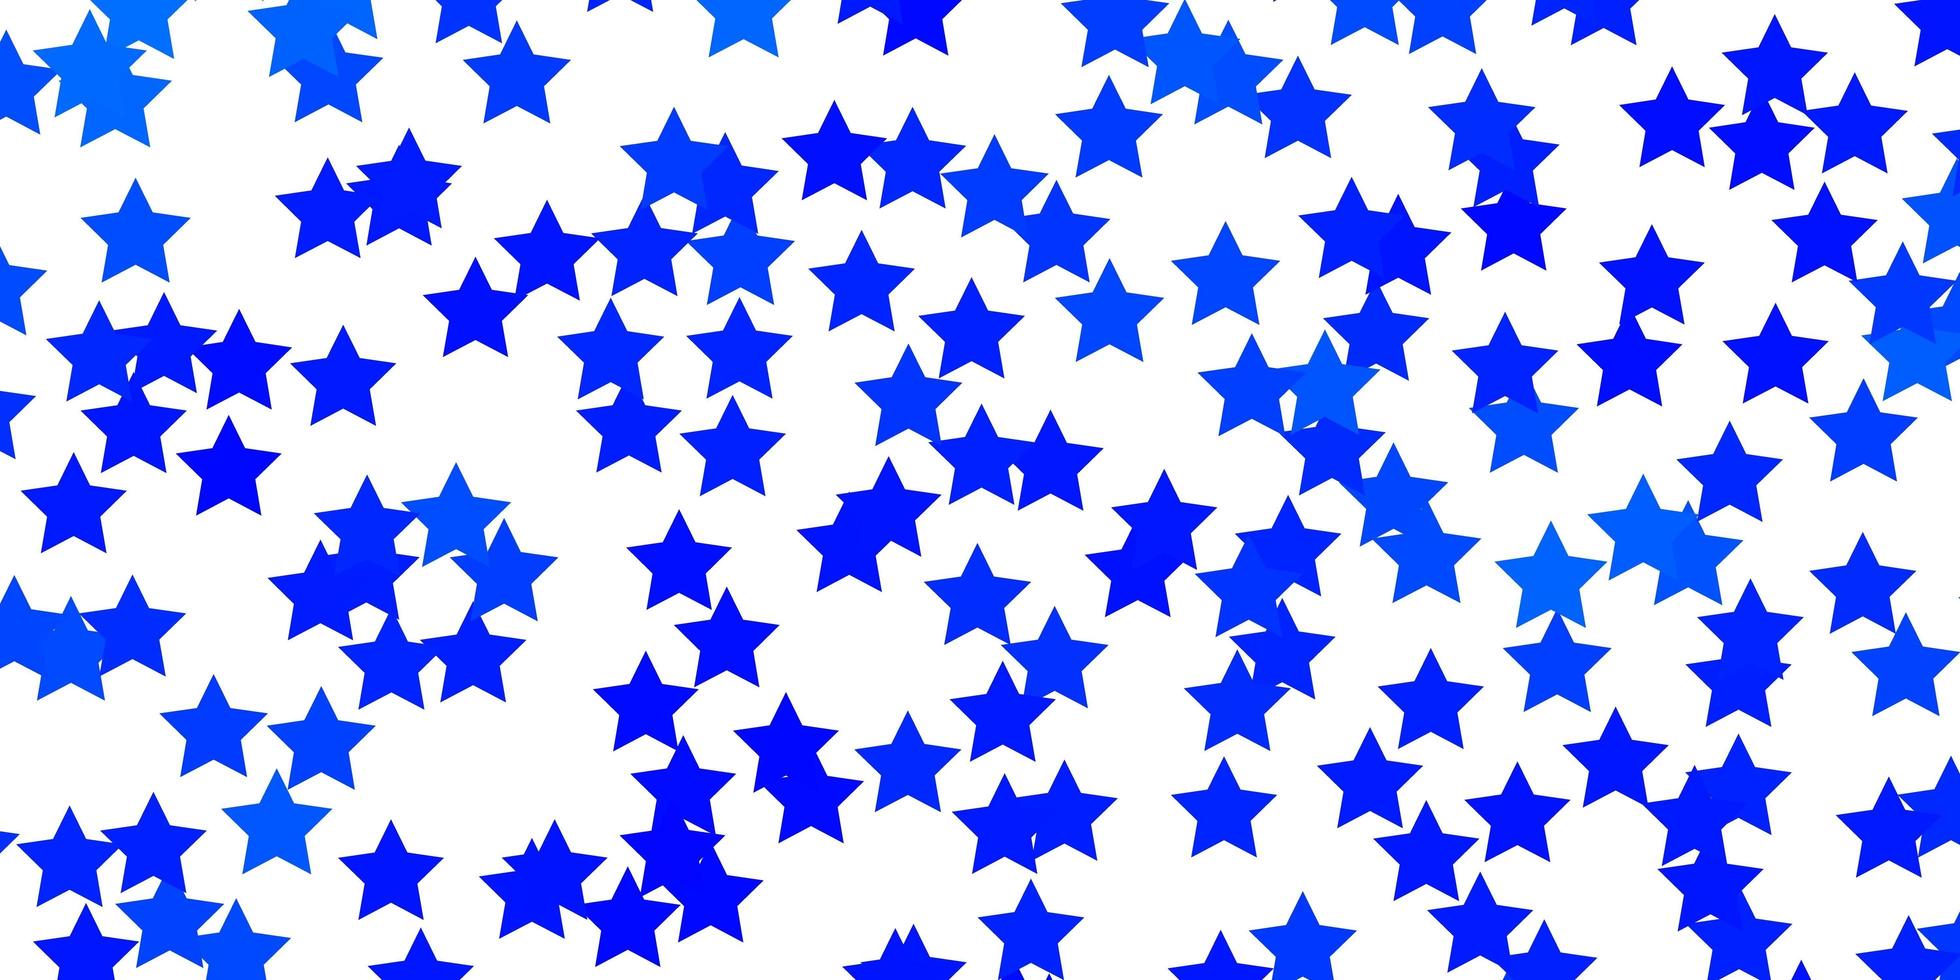 La plantilla de vector azul claro con estrellas de neón difumina el diseño decorativo en un estilo simple con diseño de estrellas para la promoción de su negocio